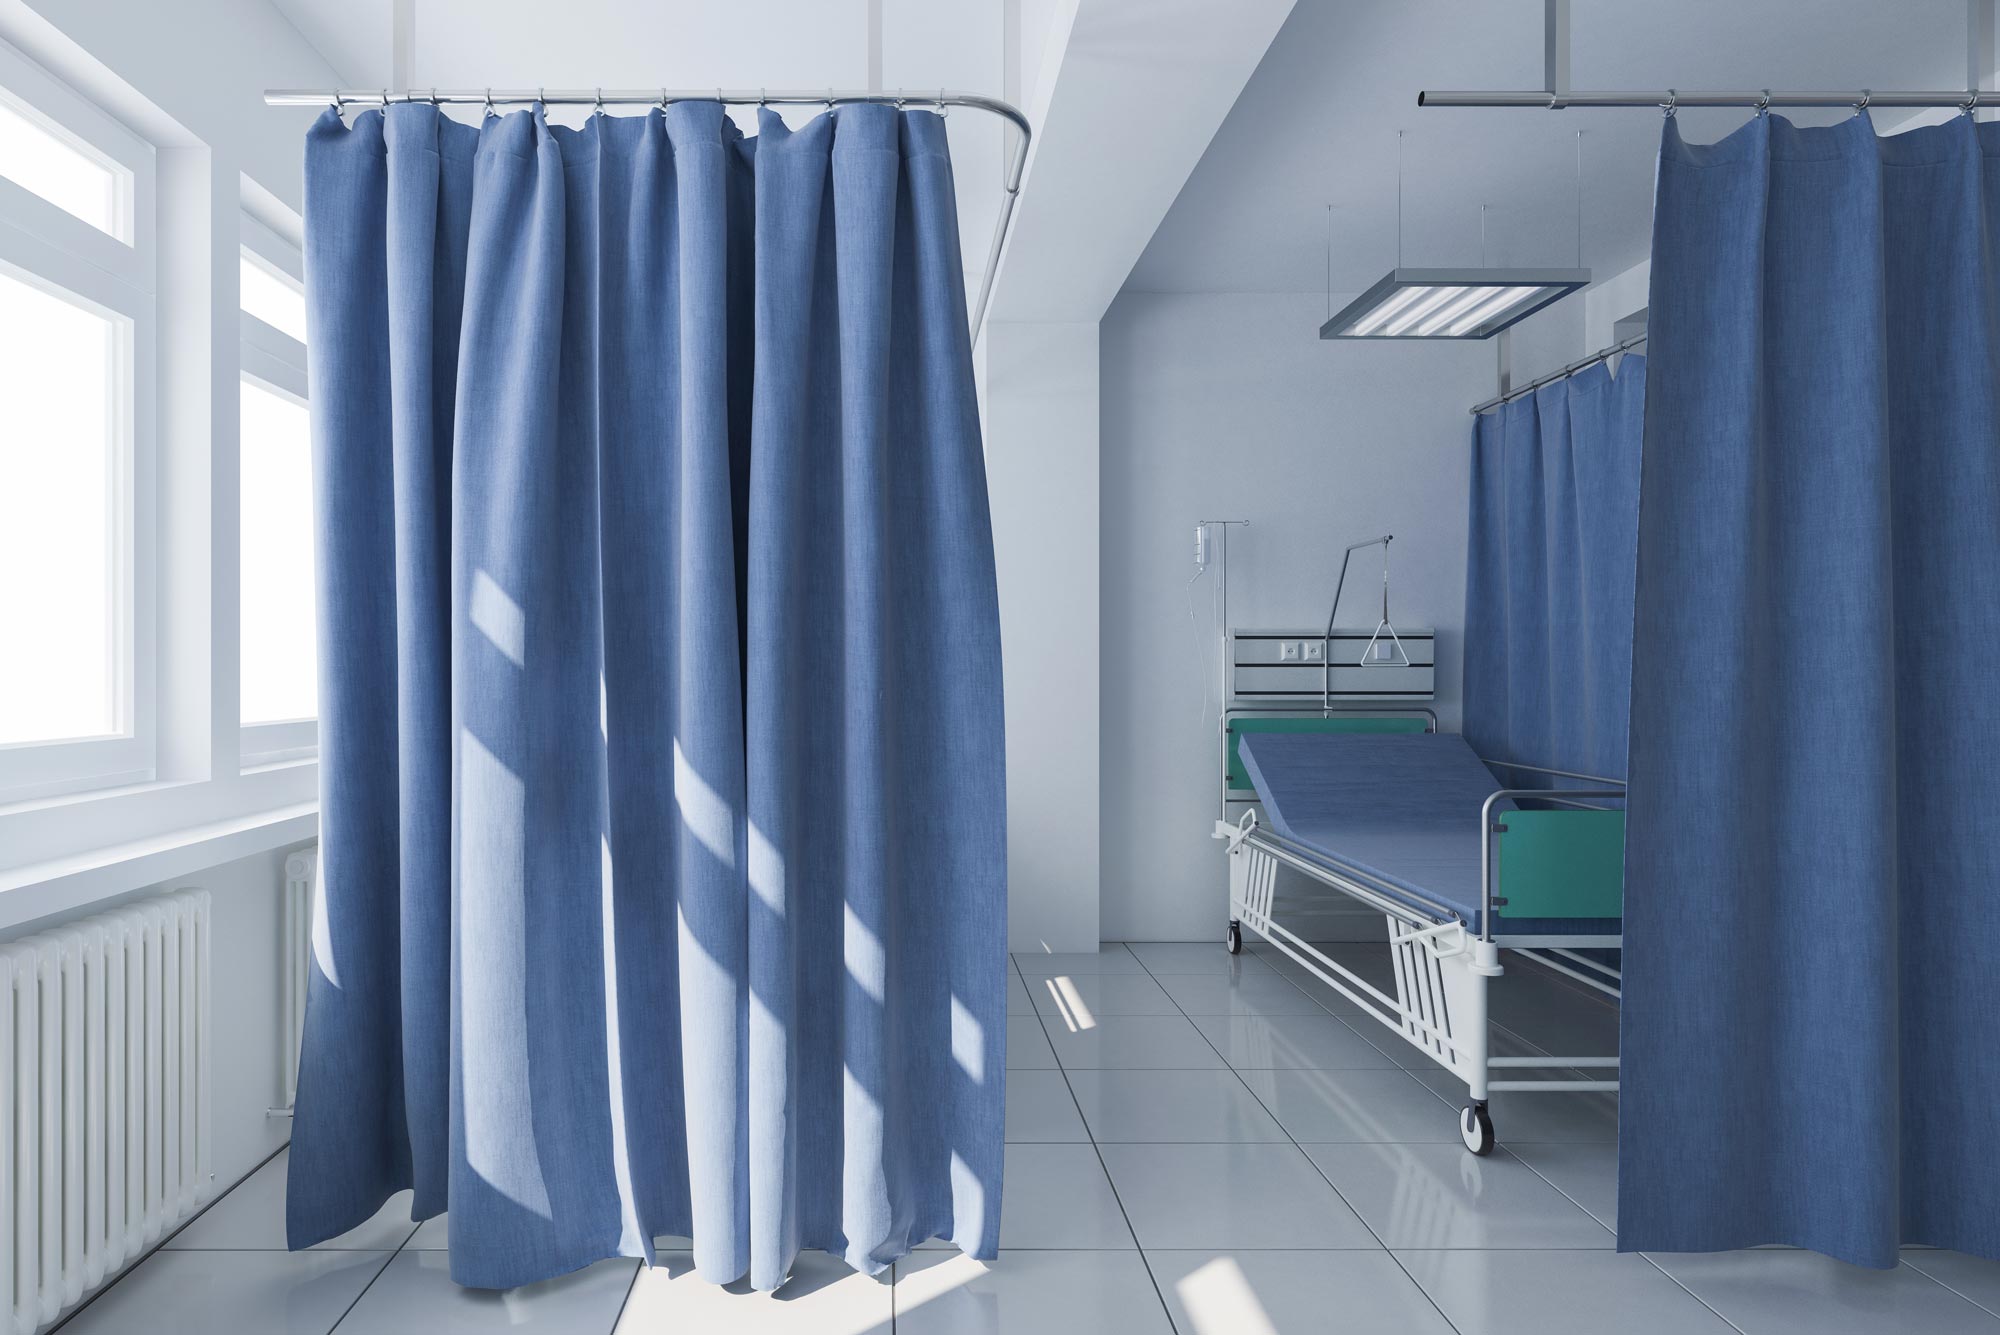 A photo of a hospital room